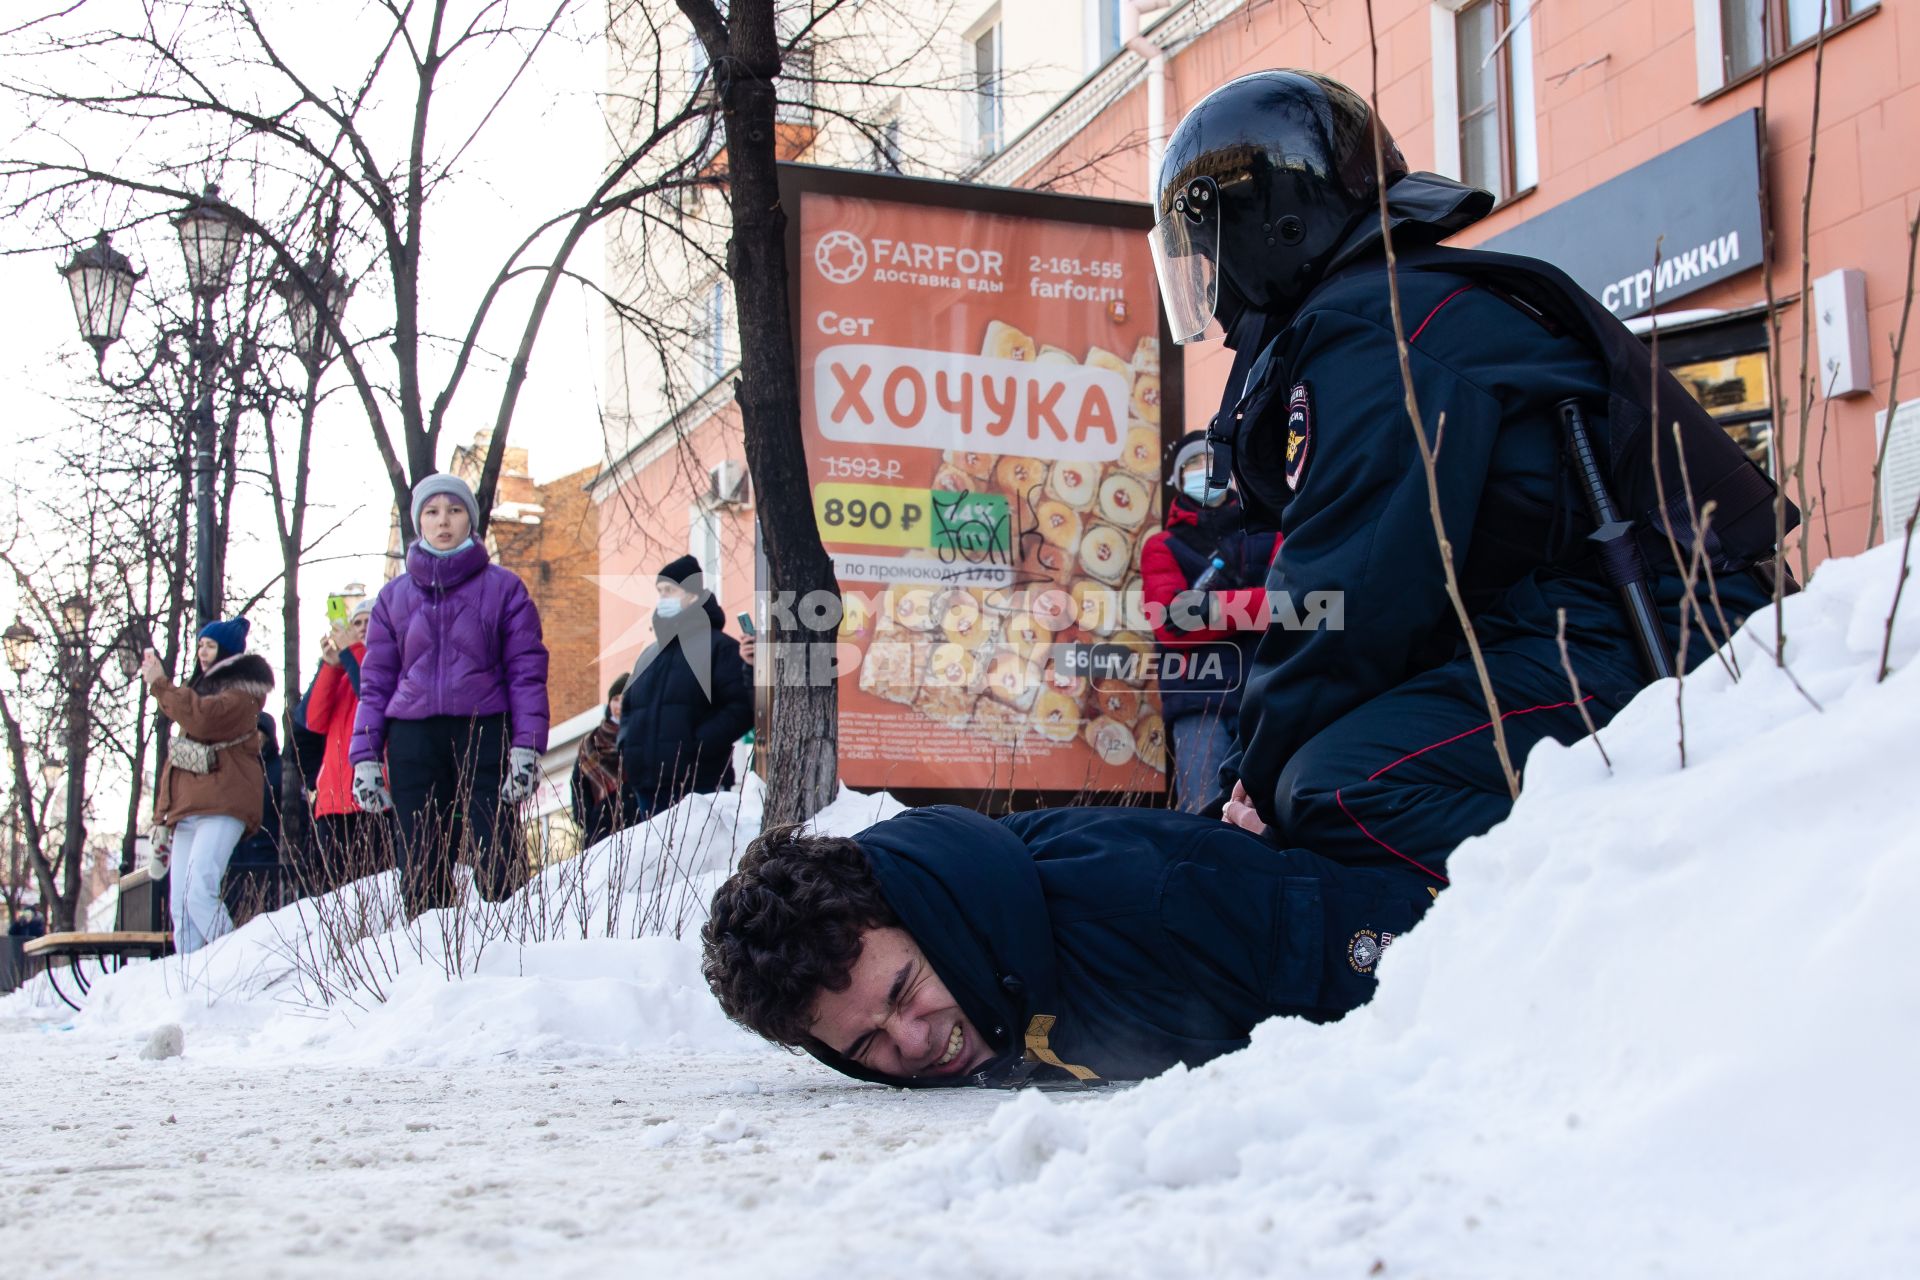 Челябинск. Сотрудник правоохранительных органов задерживает участника несанкционированной акции протеста в поддержку Алексея Навального.